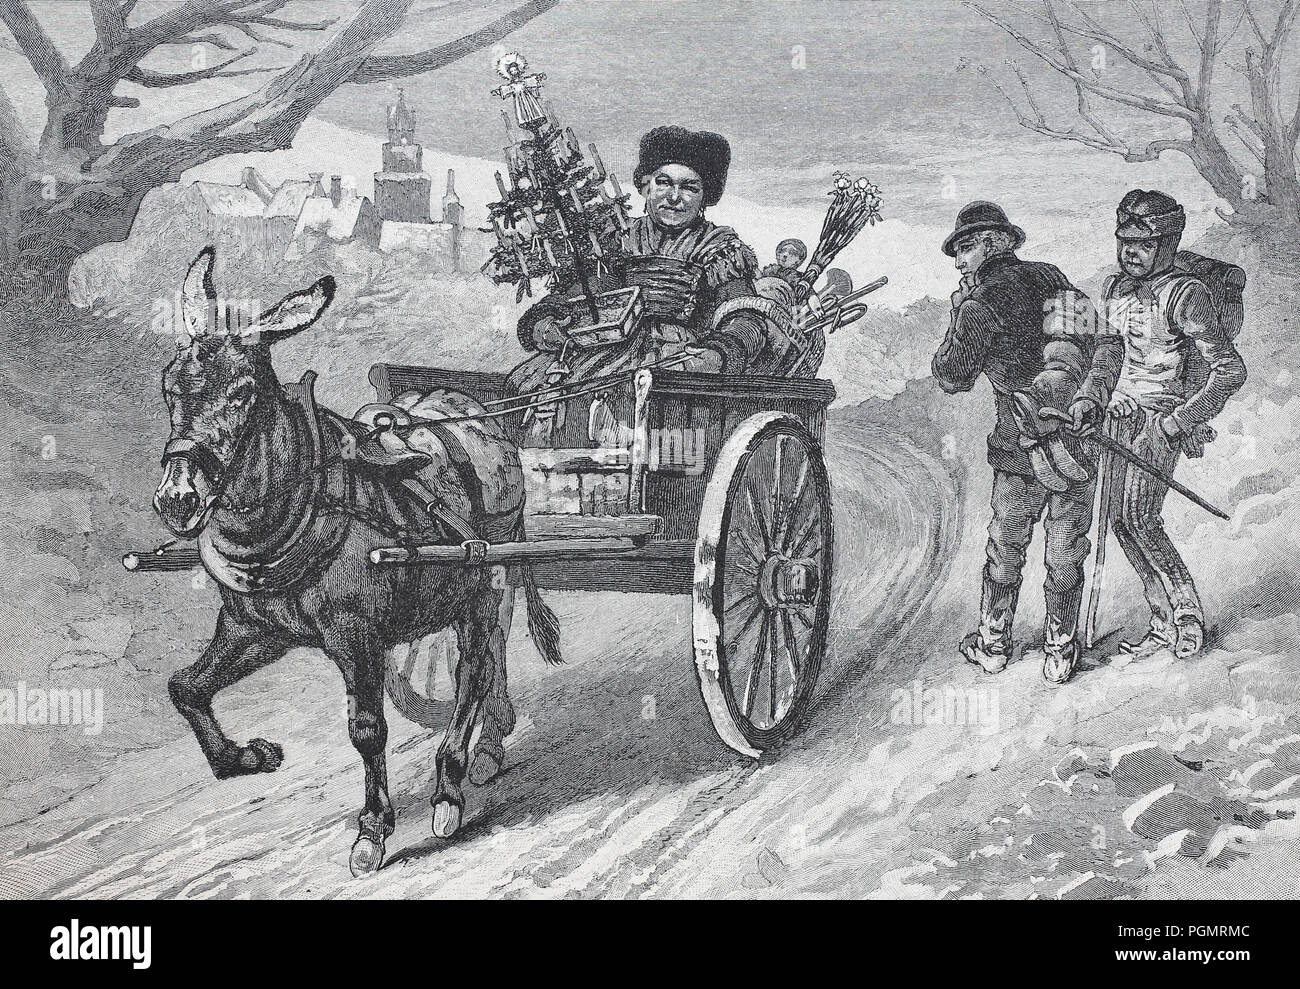 Retour de marché de Noël, avec l'âne, l'homme a acheté un arbre de Noël, une amélioration numérique reproduction d'une gravure sur bois à partir de l'année 1880 Banque D'Images